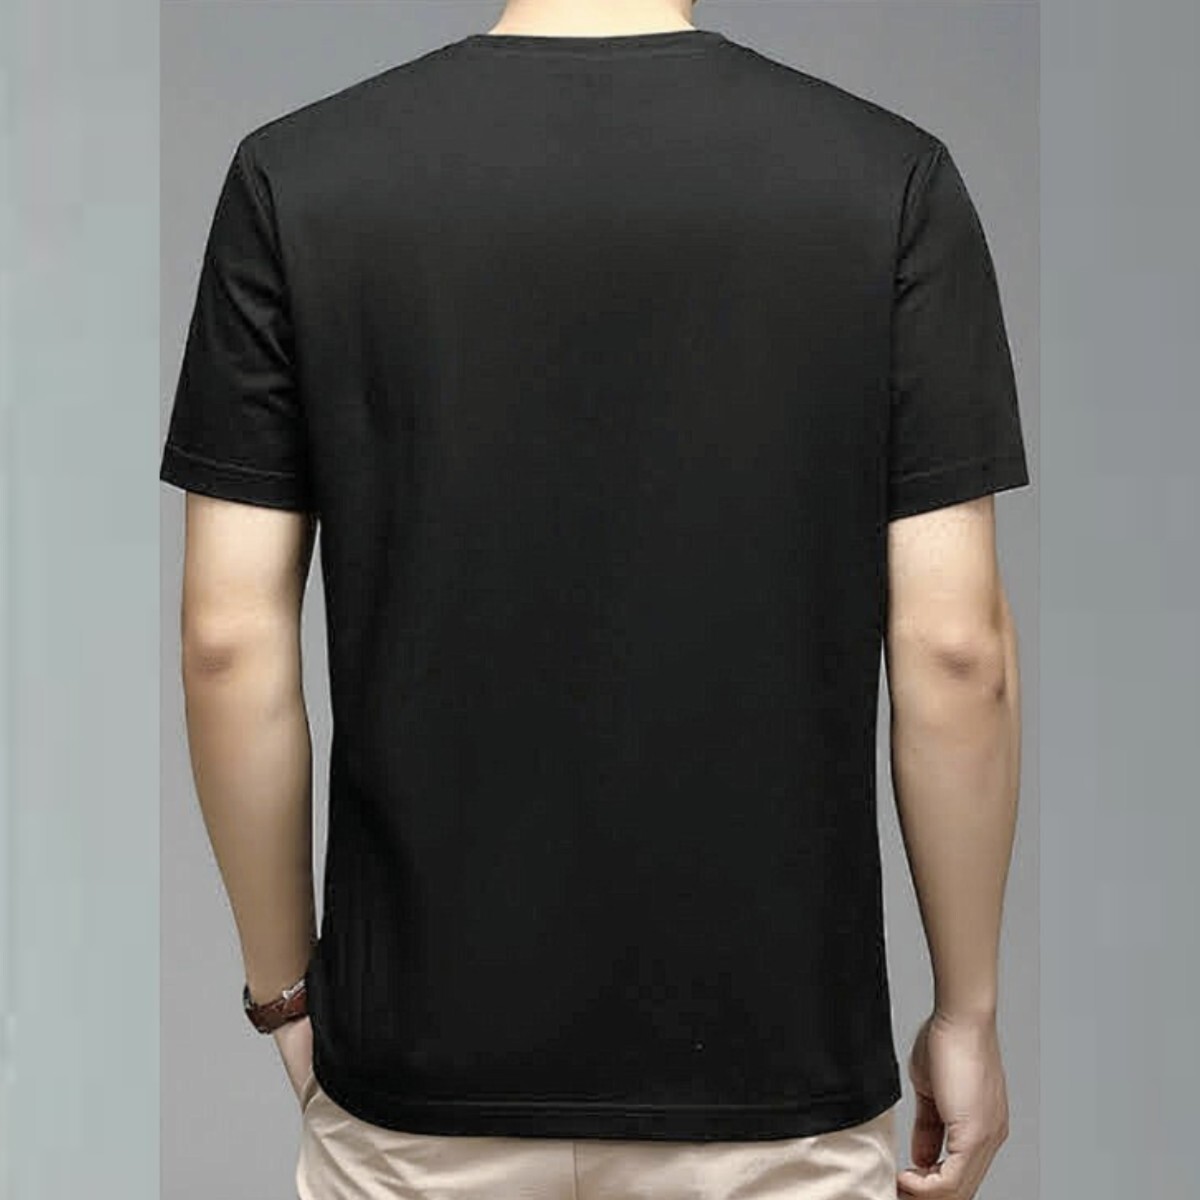 黒色シャツ メンズTシャツ 半袖Tシャツ メンズシャツ シャツ メンズ肌着 半袖シャツ 男性肌着 男性シャツ シャツメンズ インナーシャツ